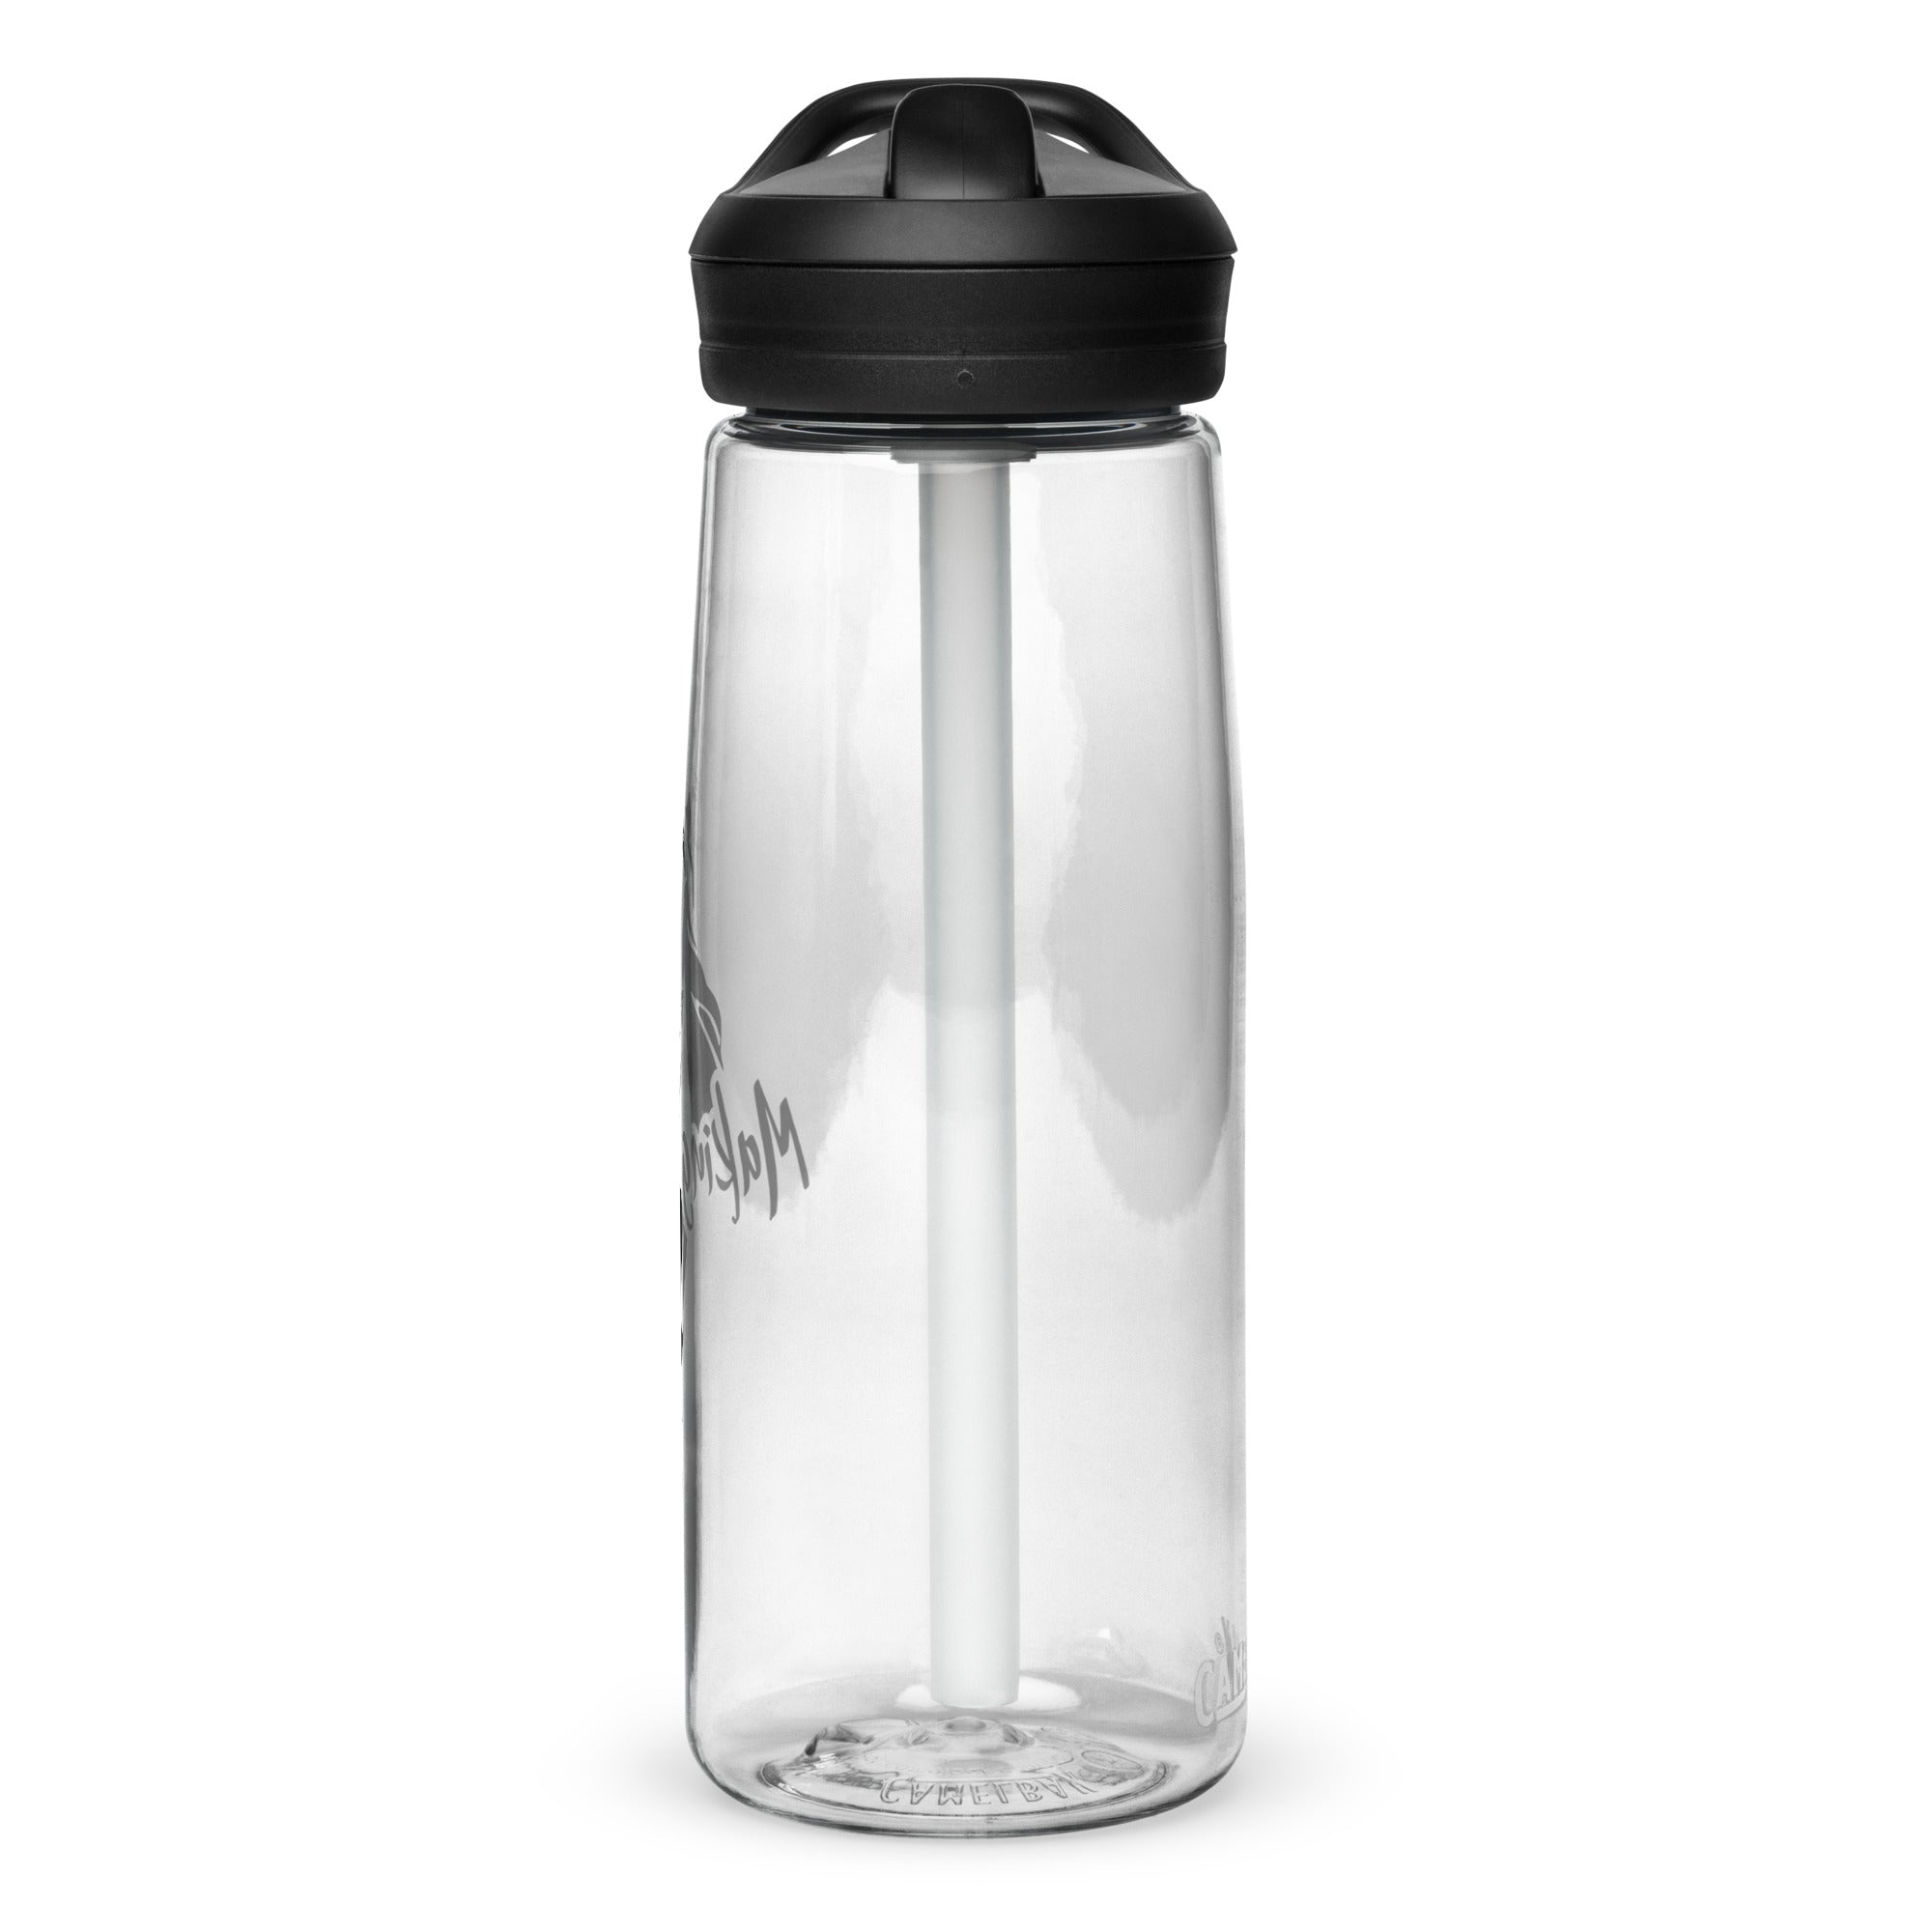 MS Sports water bottle